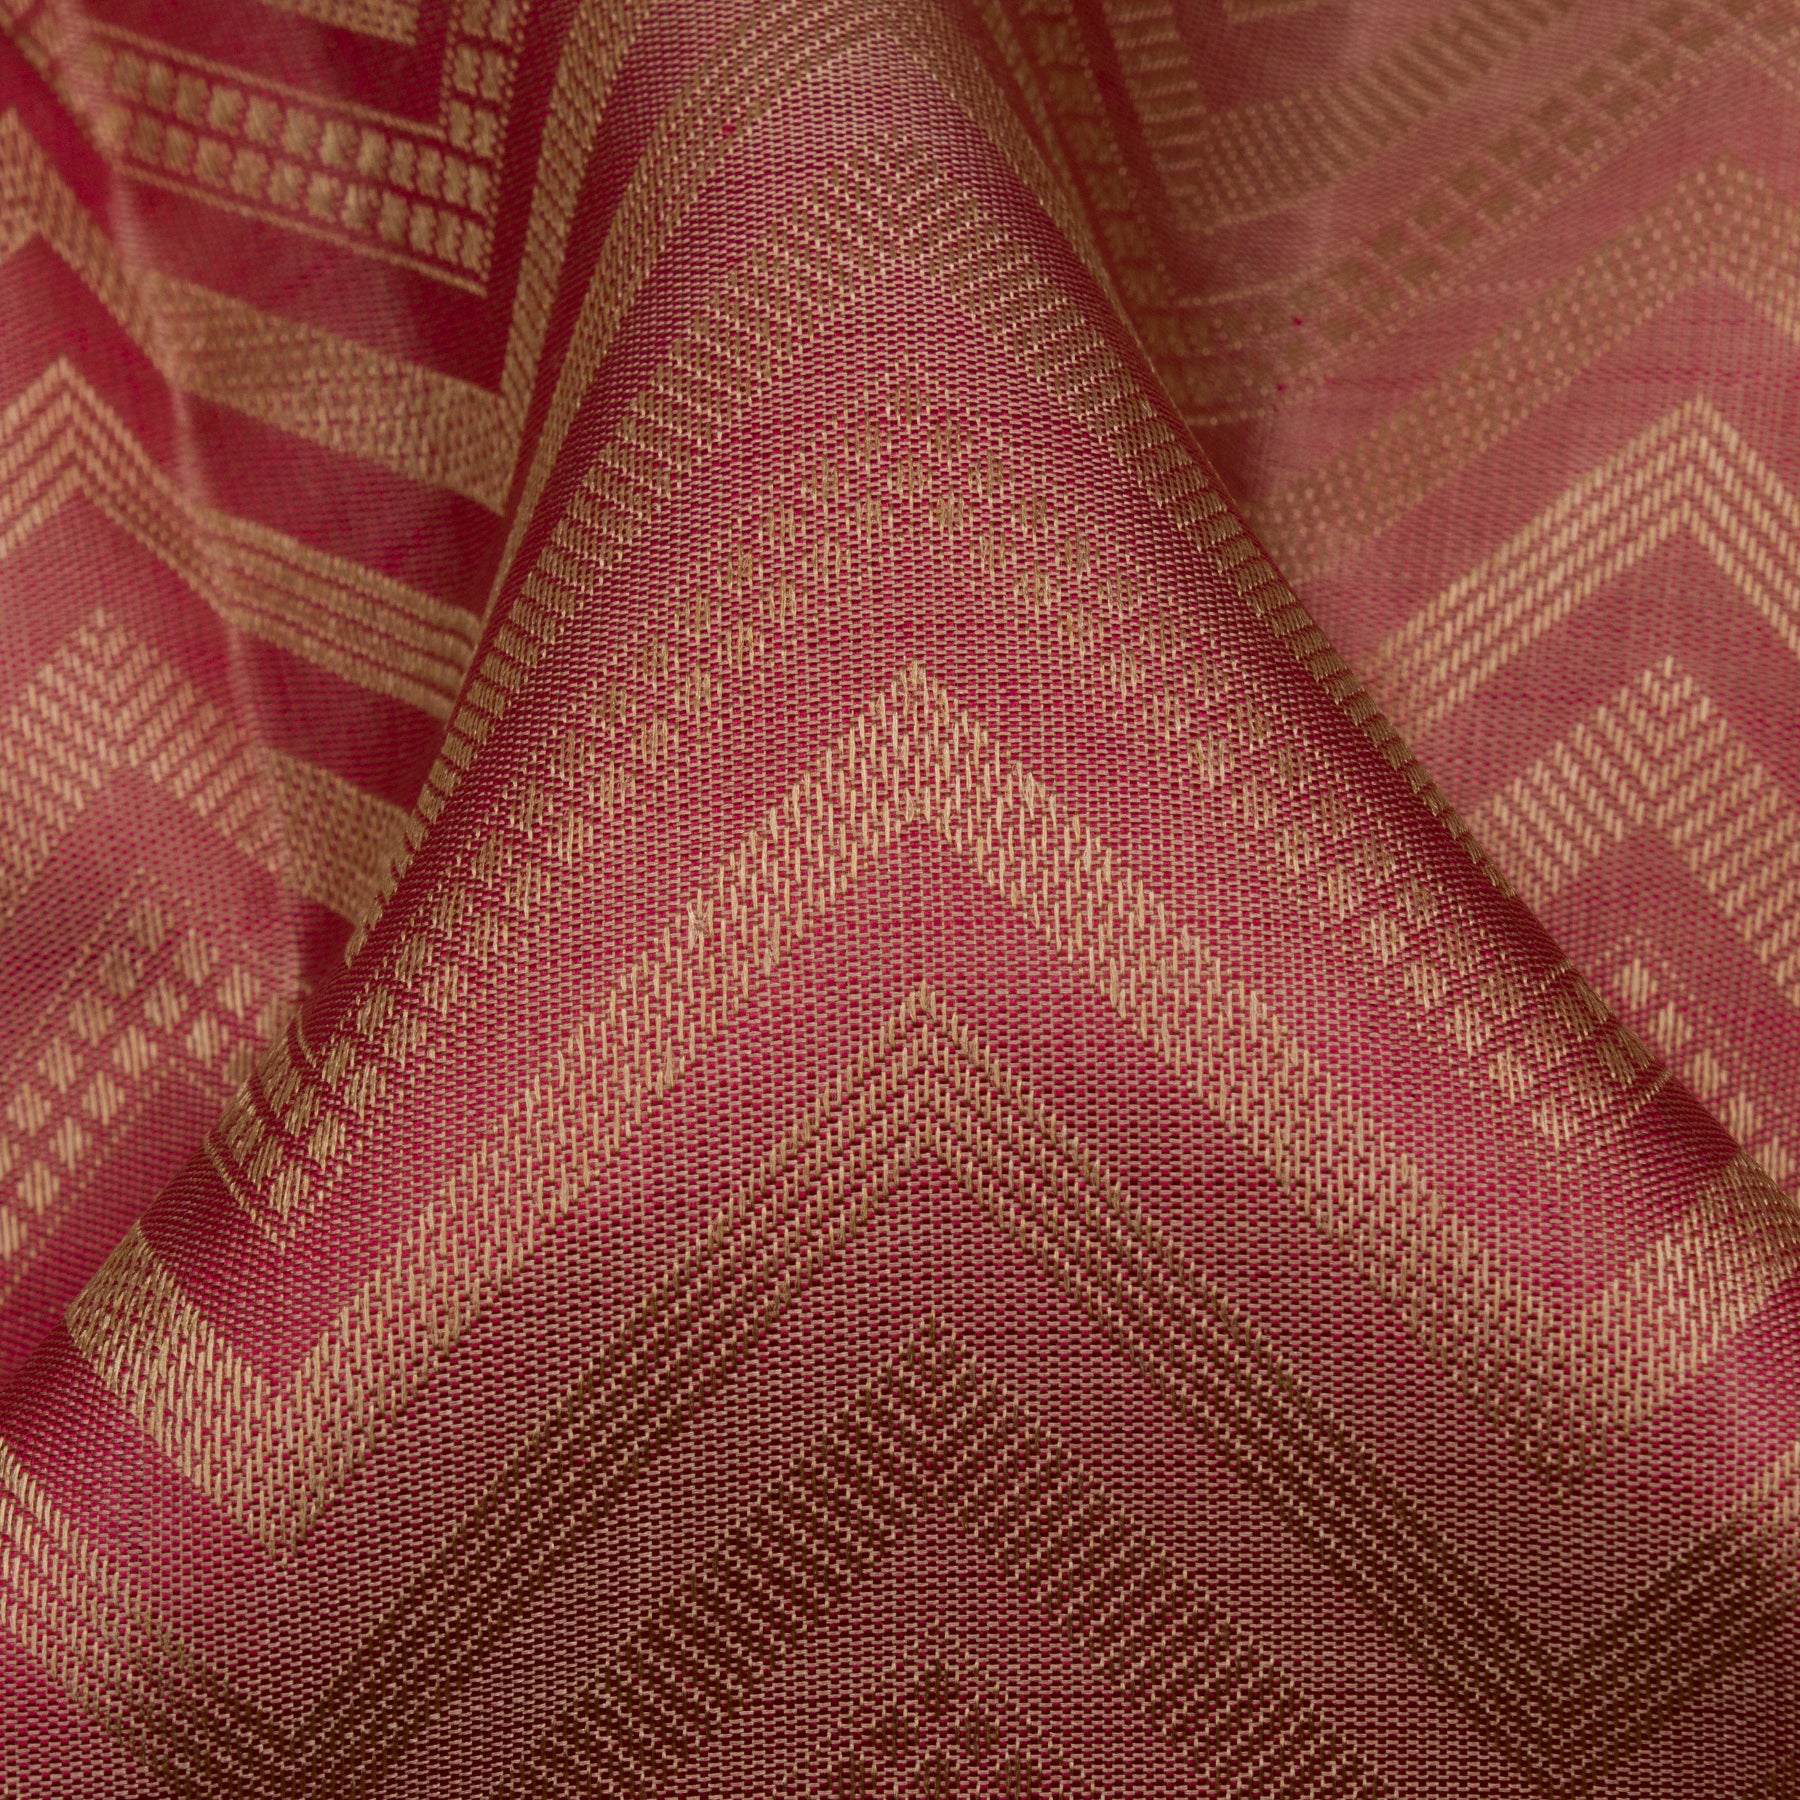 Kanakavalli Kanjivaram Silk Sari 23-599-HS001-13882 - Fabric View